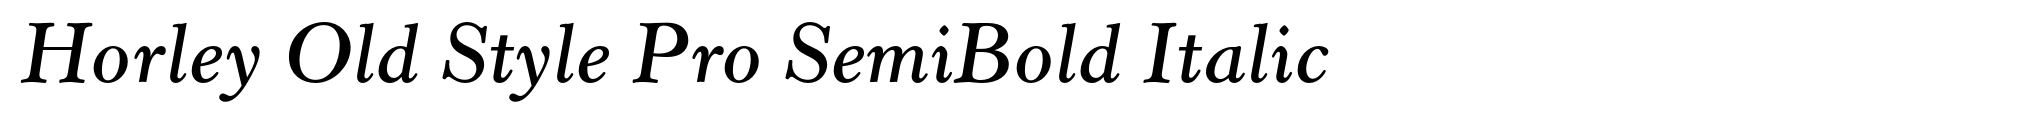 Horley Old Style Pro SemiBold Italic image